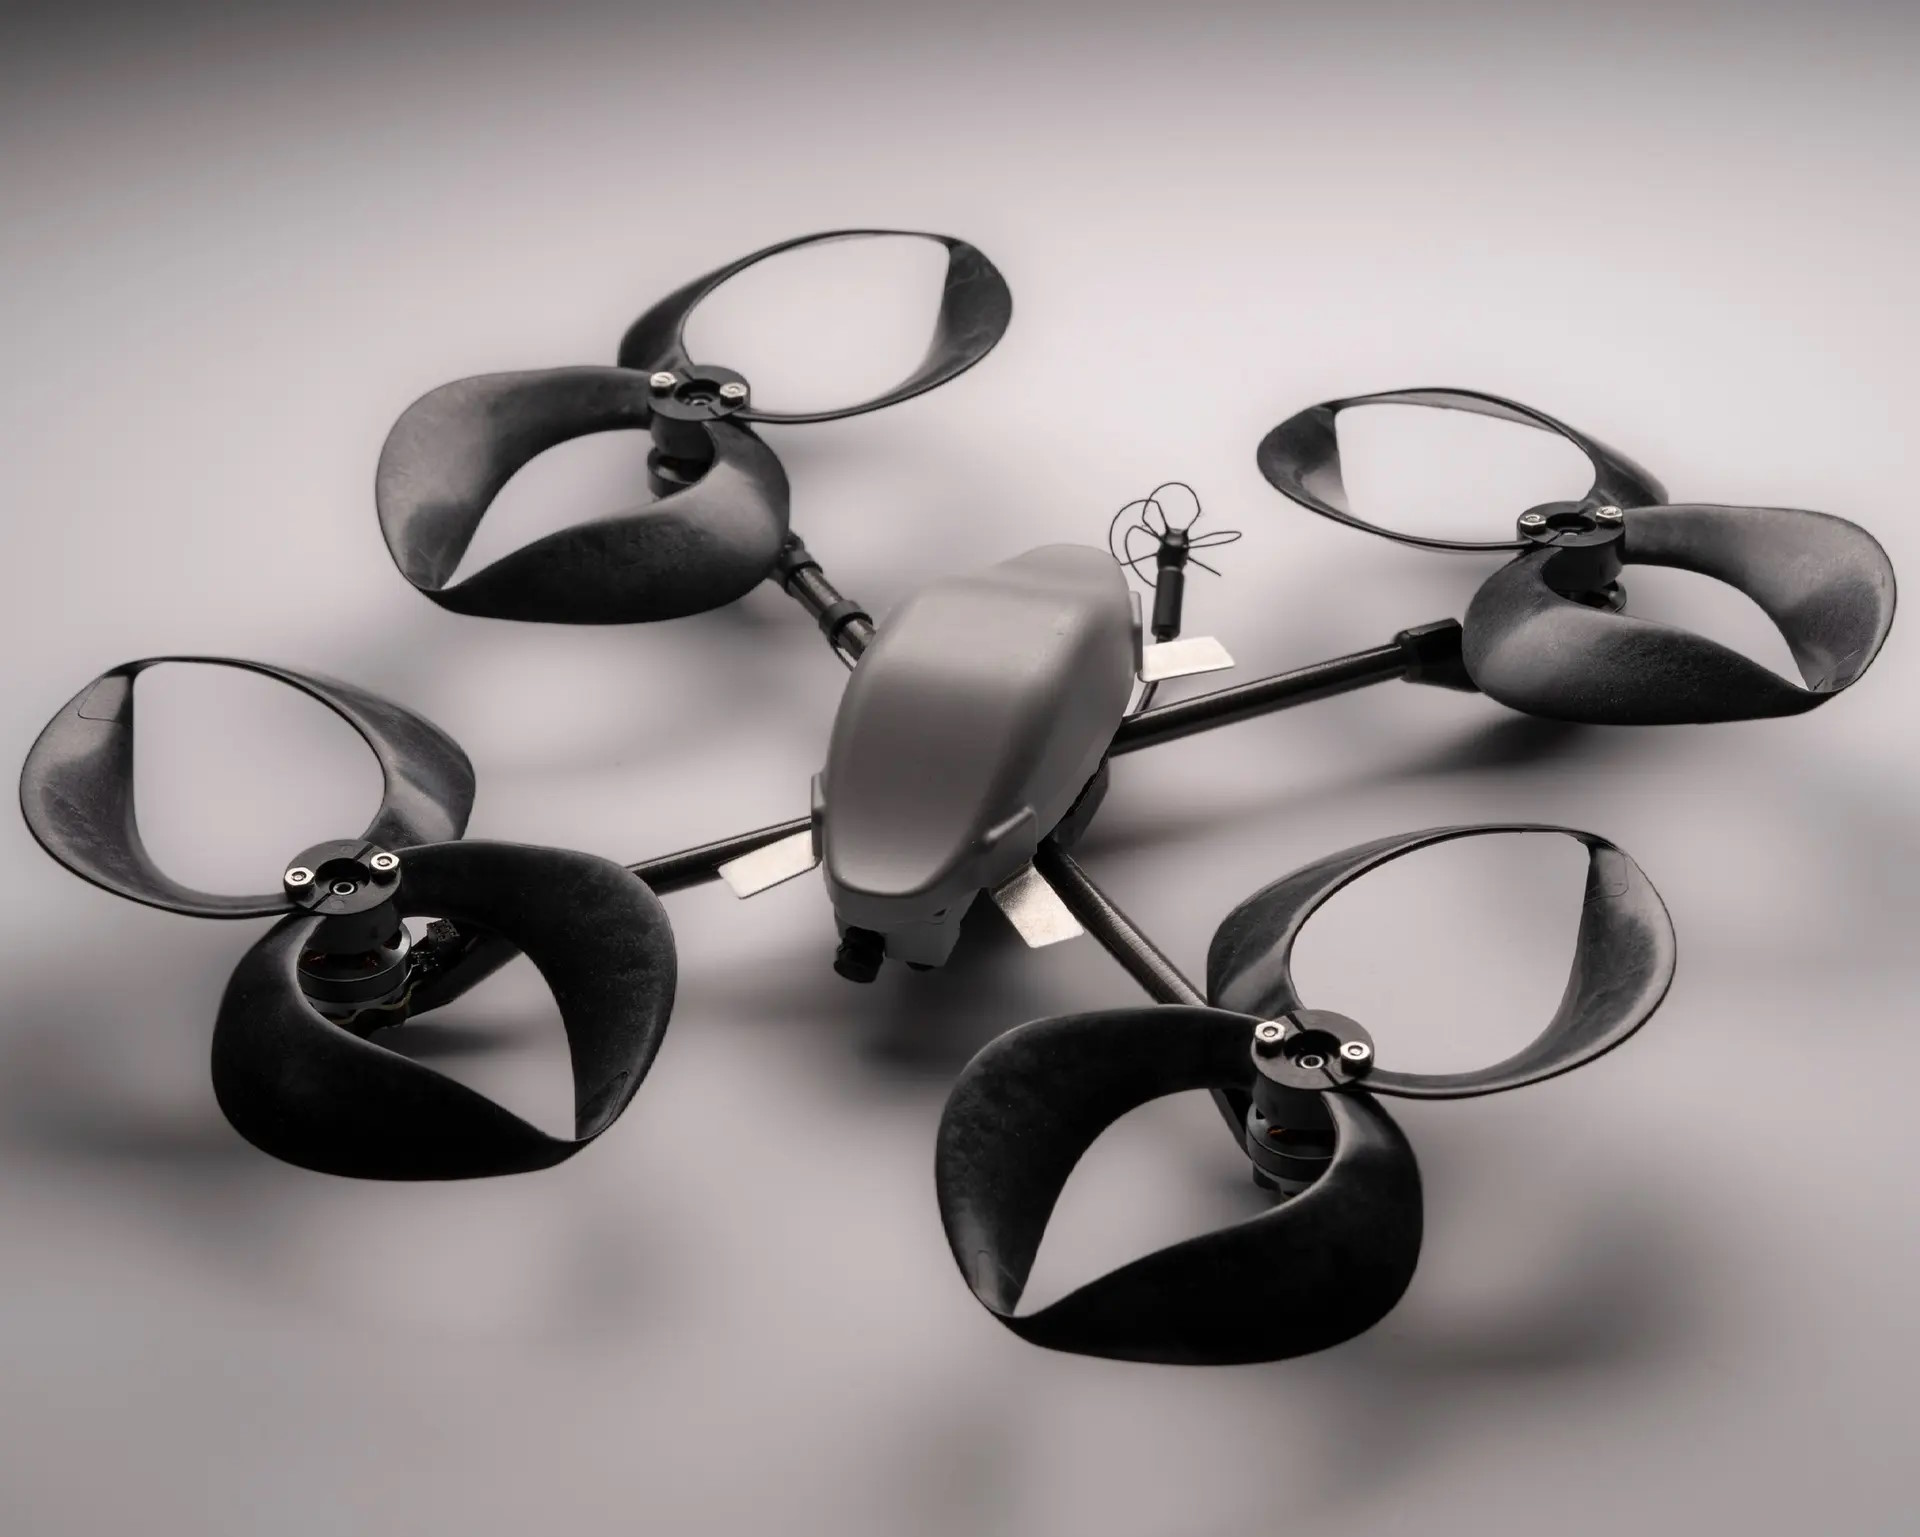 Ces hélices toroïdales réduisent significativement le bruit des drones quadricoptères. © MIT